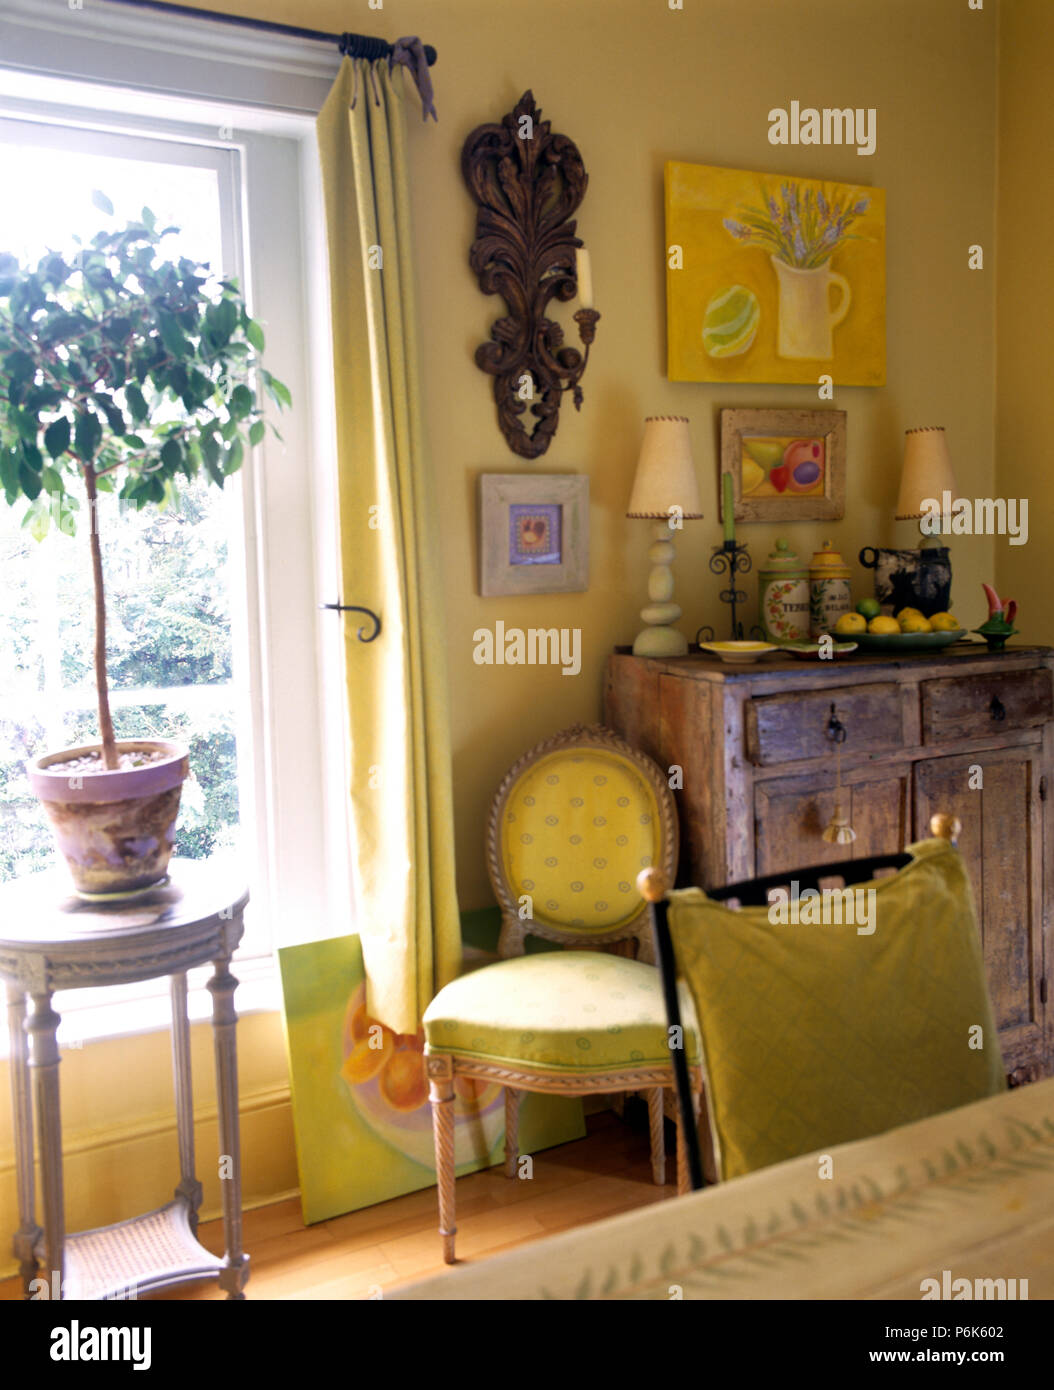 Bay Tree en pot sur une petite table dans la fenêtre jaune dans une salle à manger avec une applique murale au-dessus d'une chaise de salle à manger jaune capitonné Banque D'Images